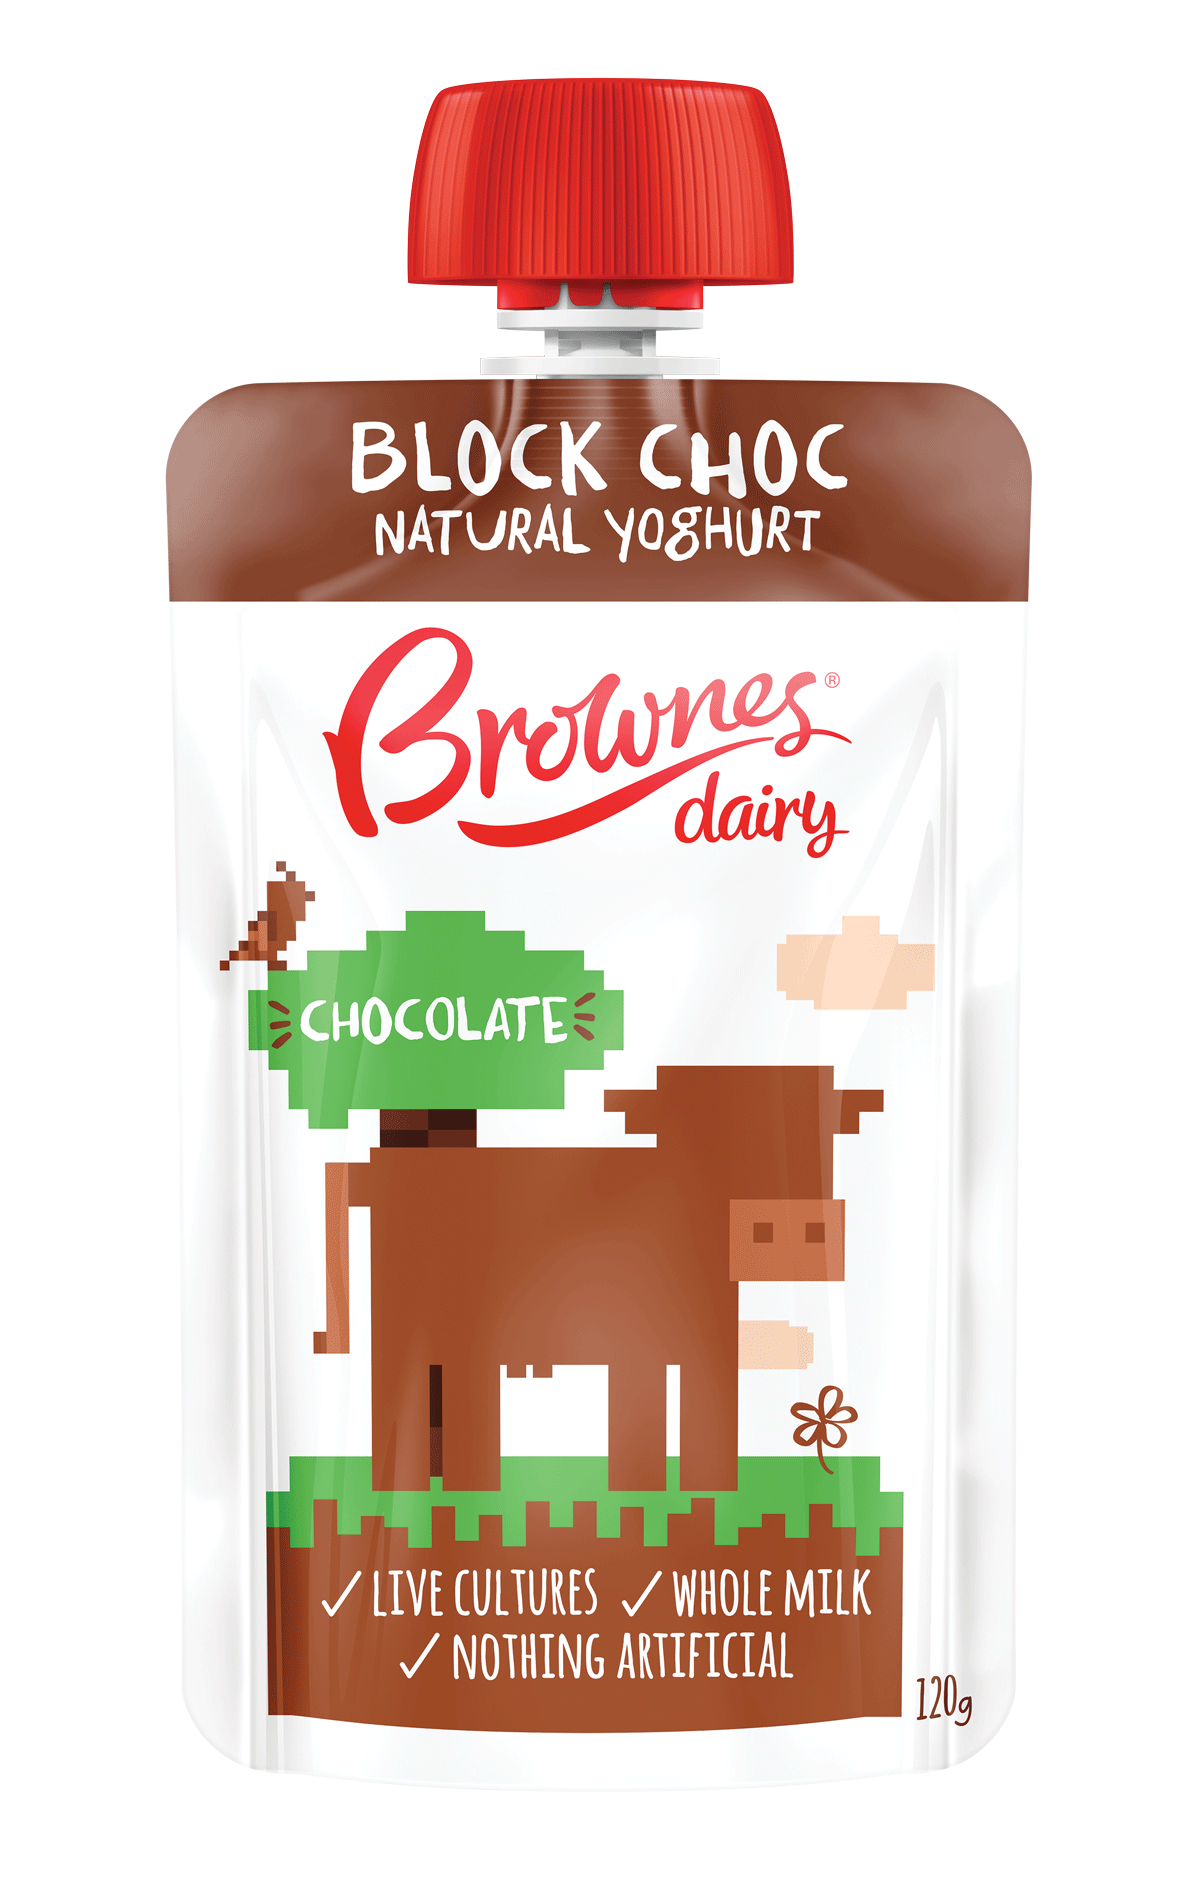 Block Choc Natural Yoghurt